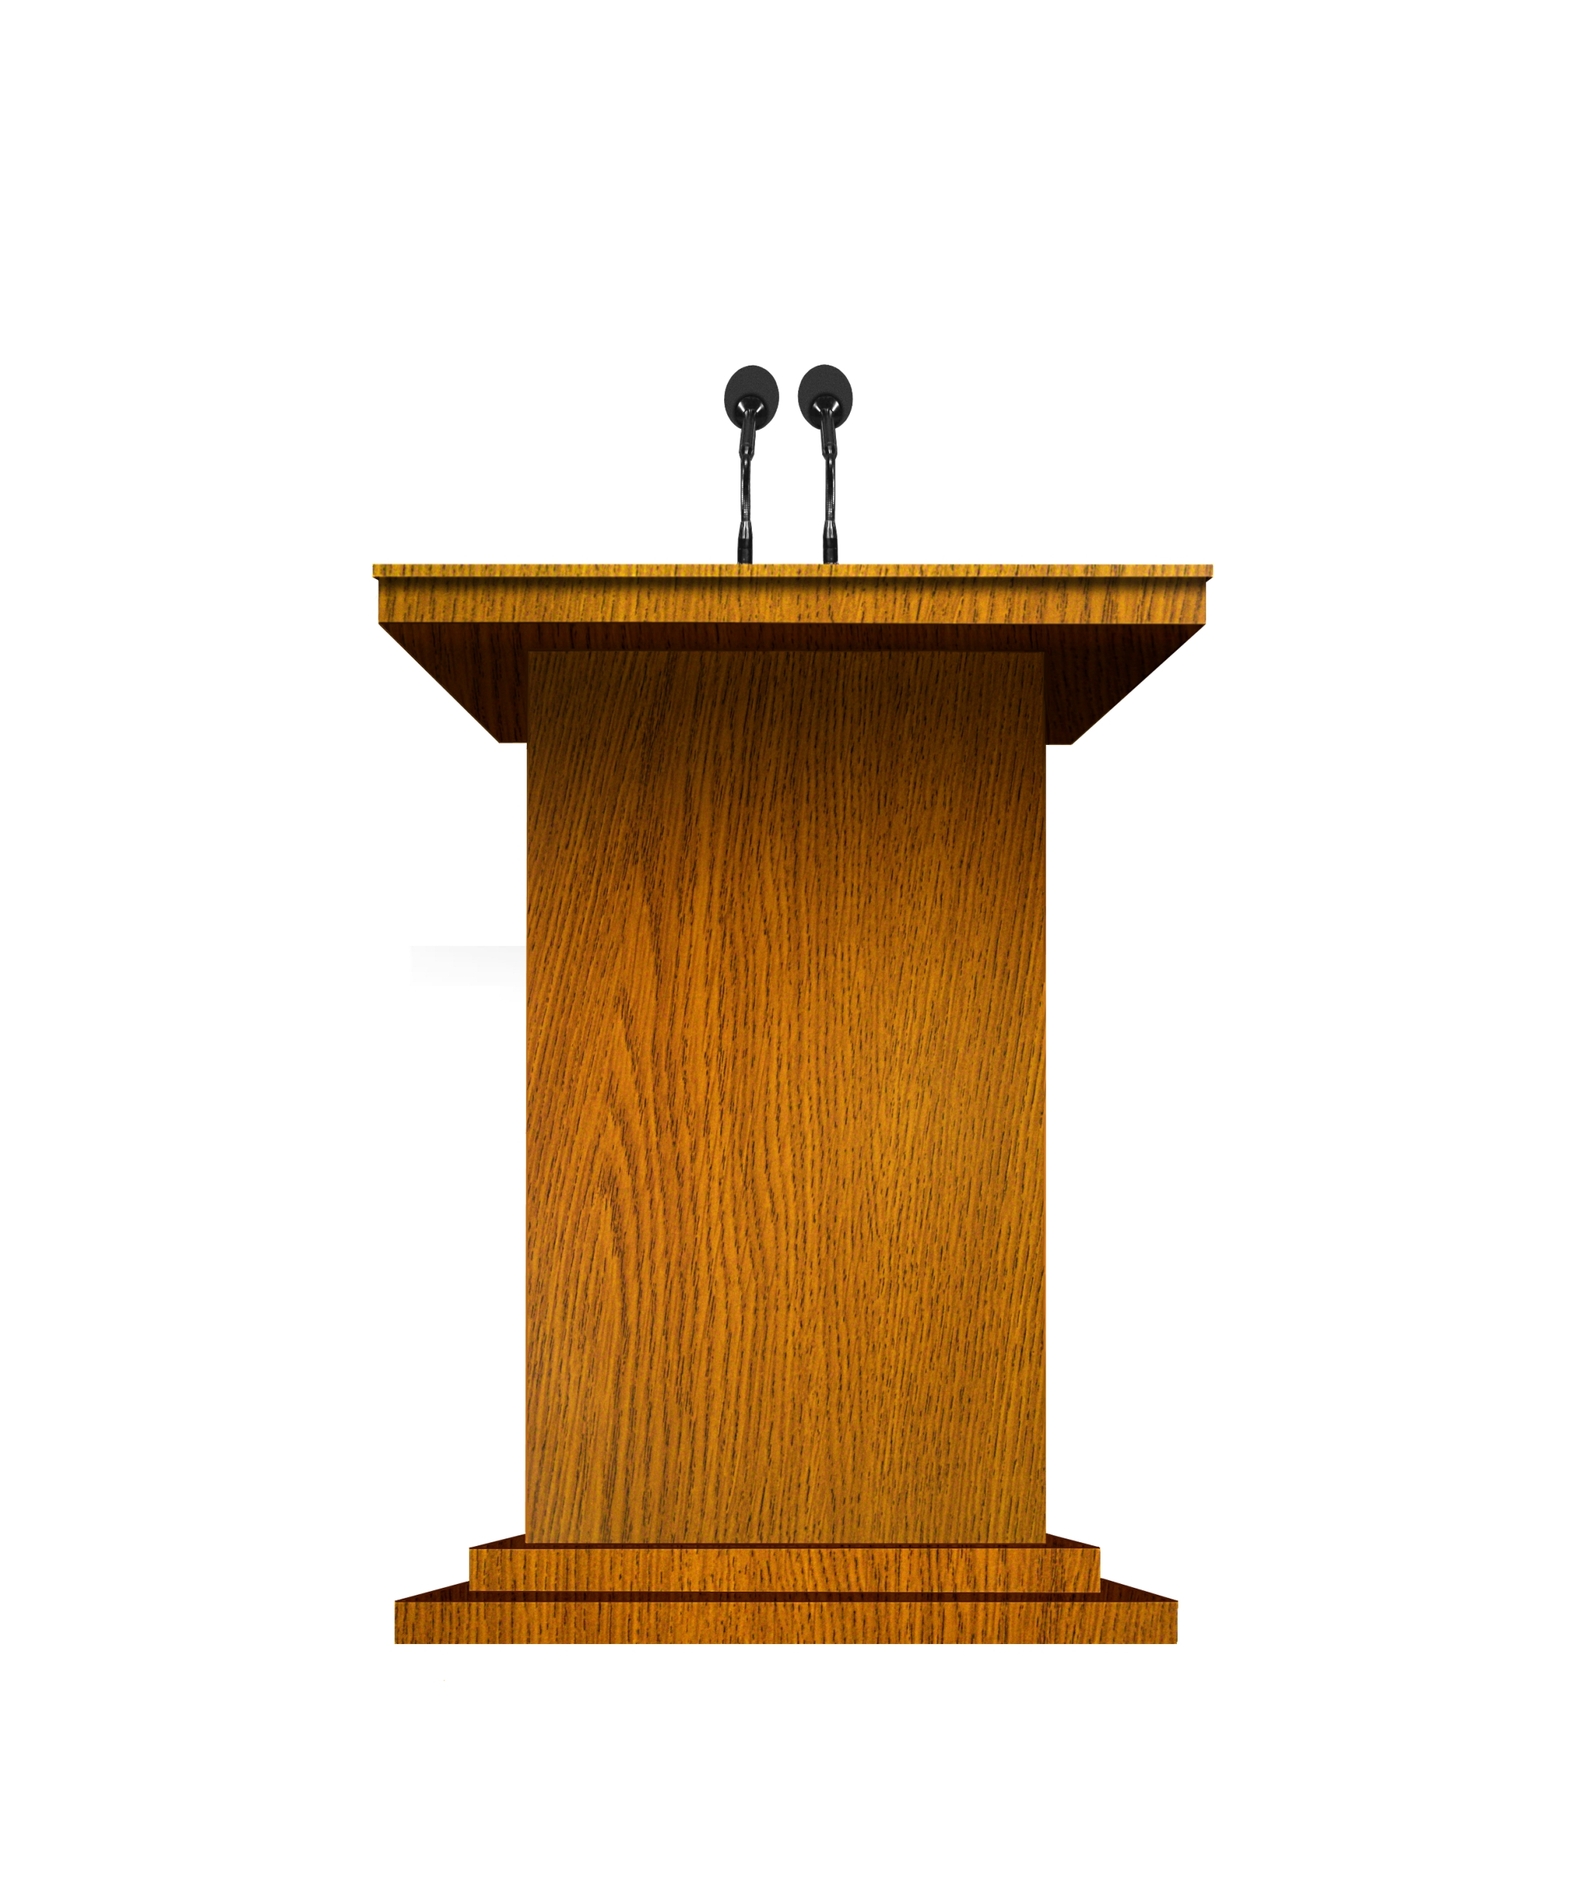 Speaker At Podium Clip Art - Image to u